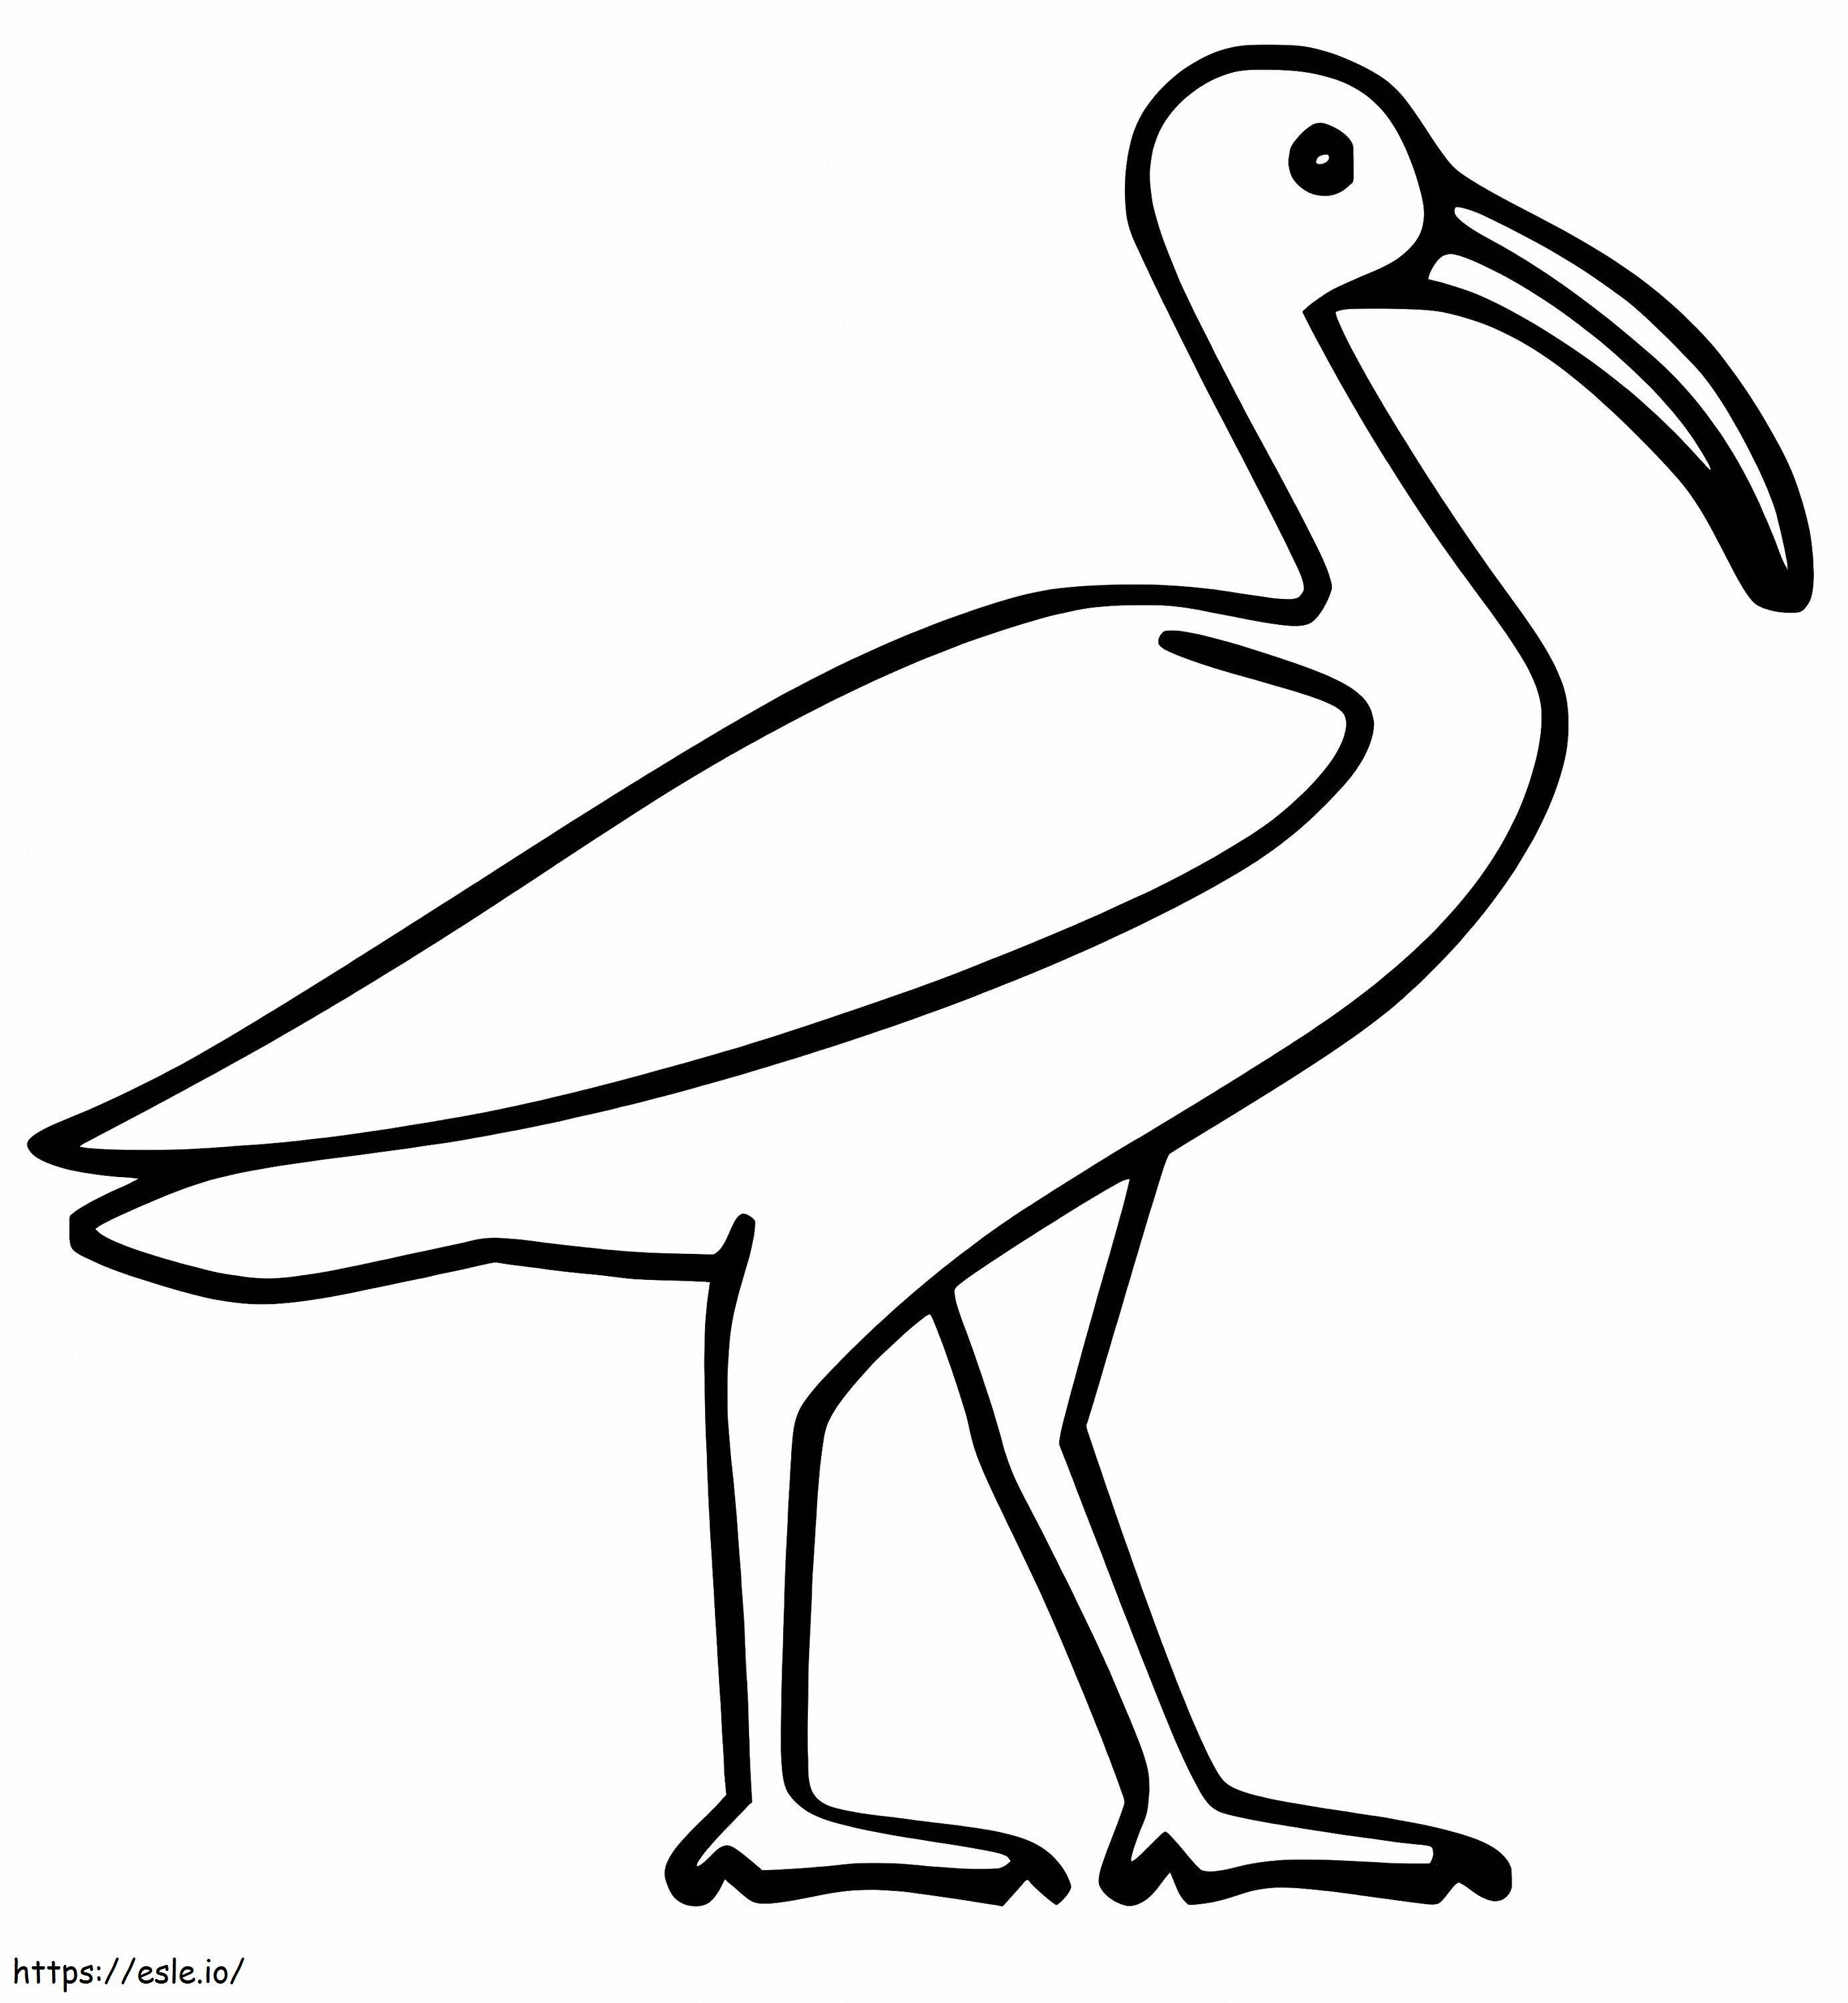 Łatwy Ibis kolorowanka